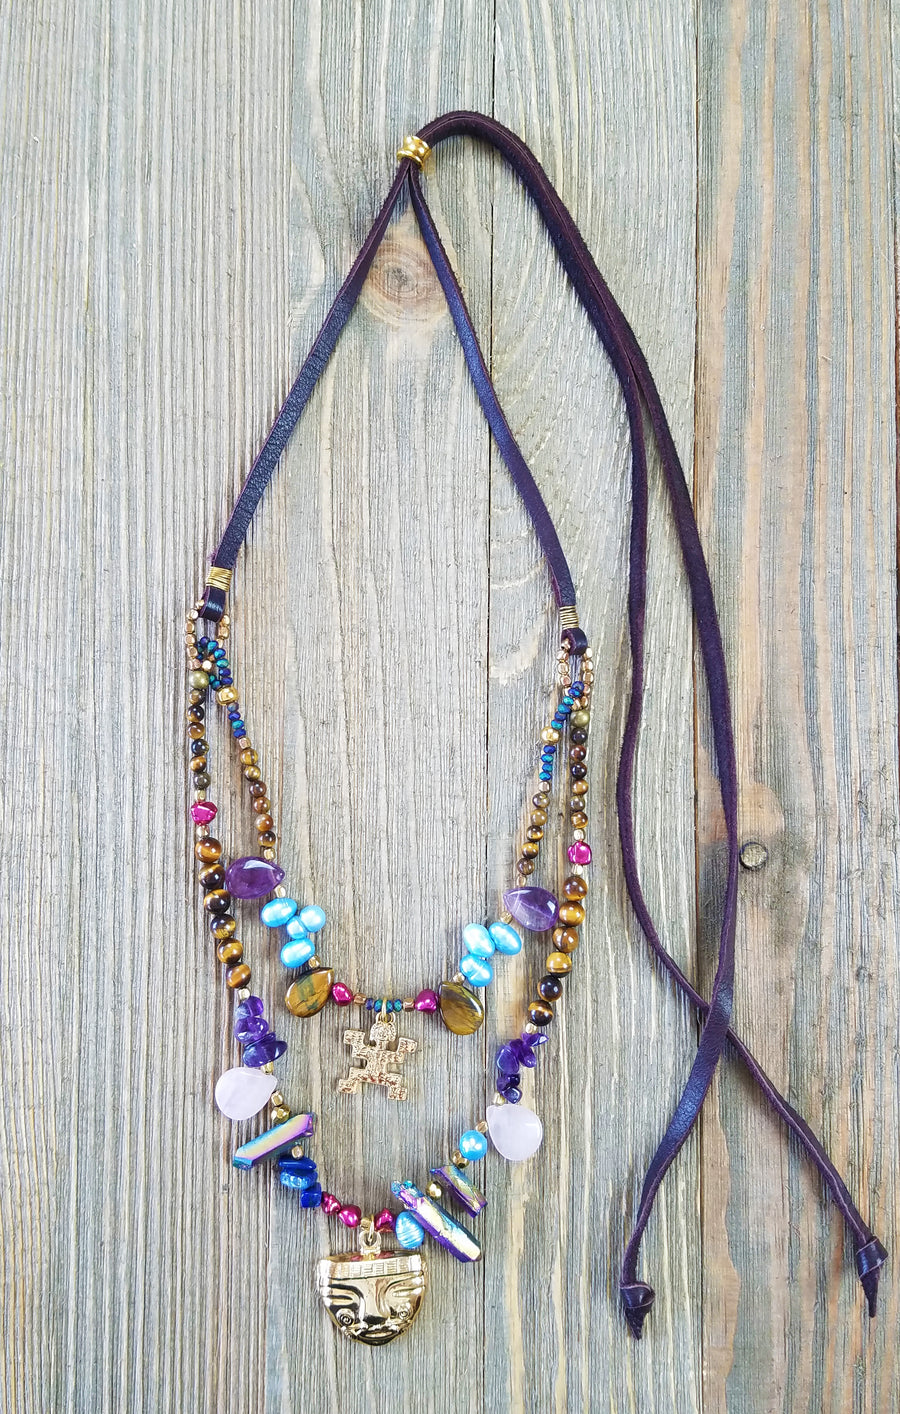 Pre-Columbian Layered Necklace - Evita Mia Designs